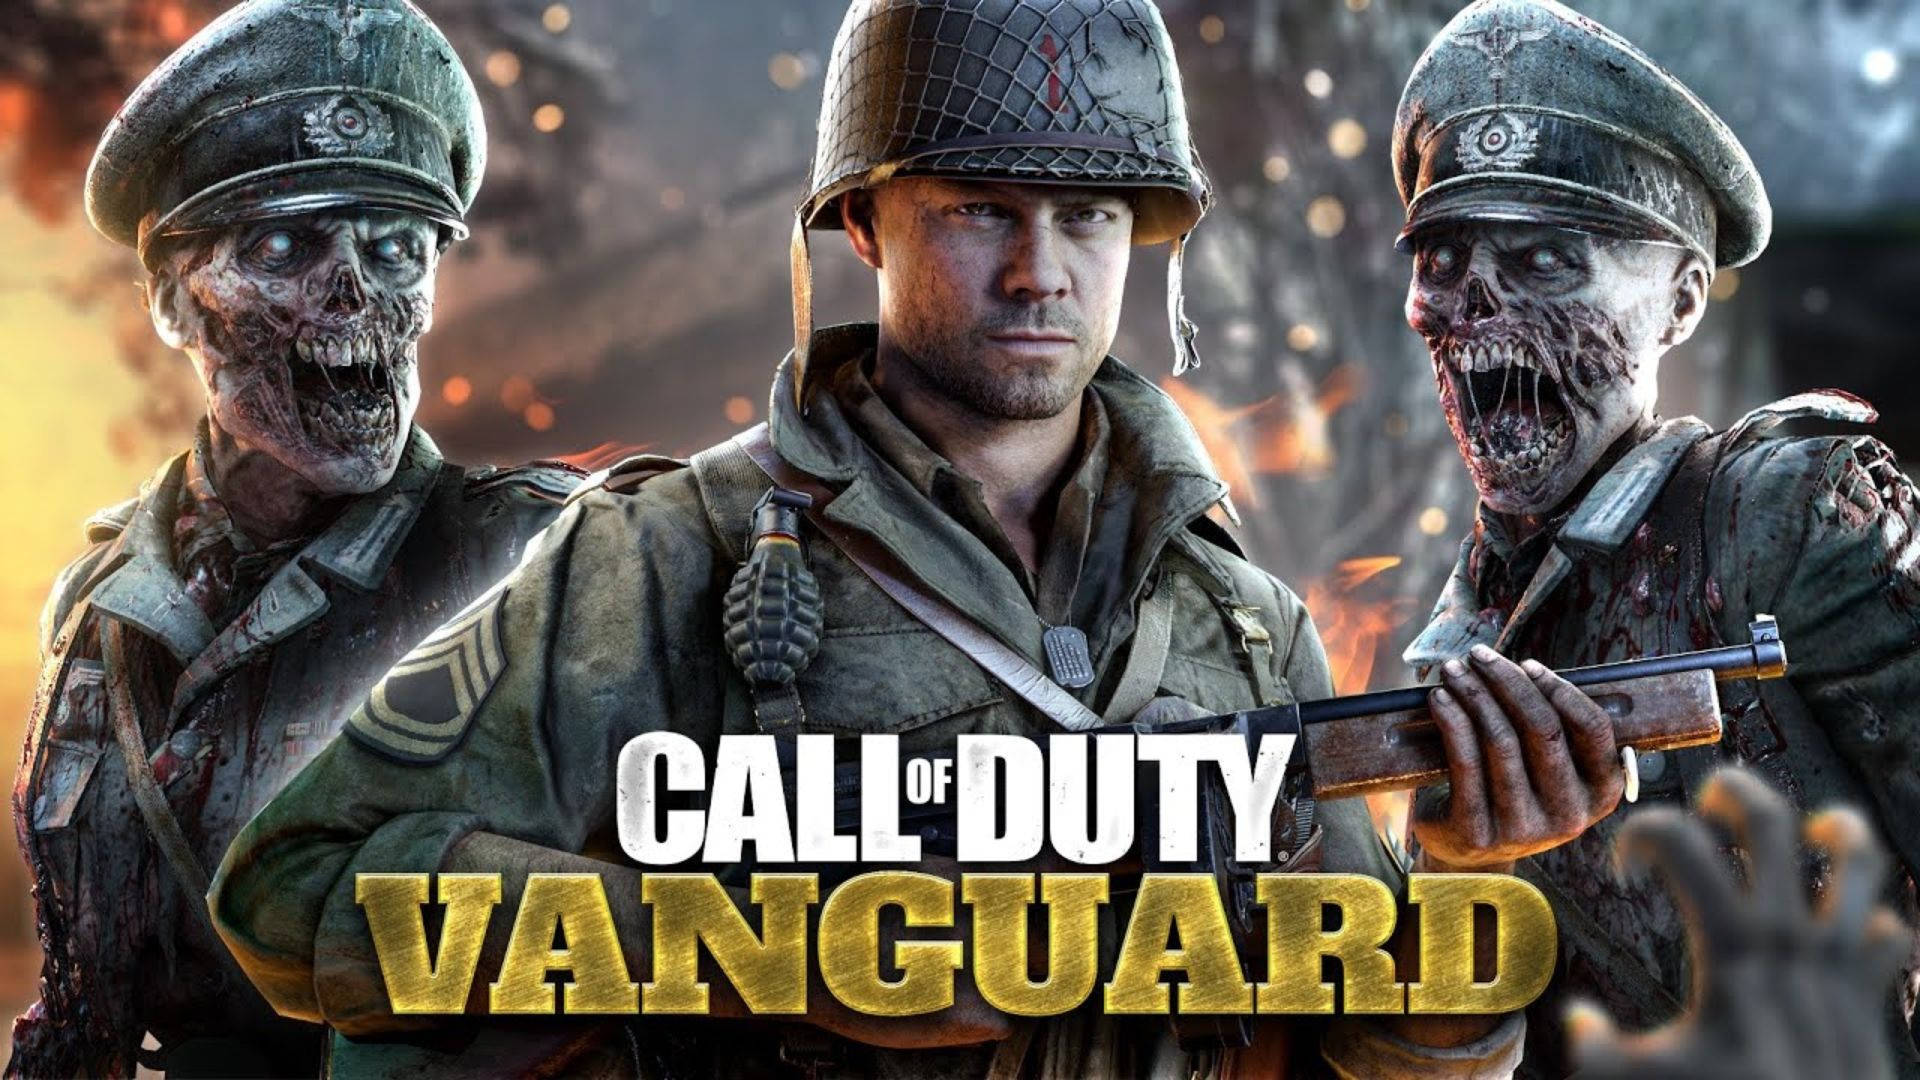 Upplevnästa Nivå Av Gaming Med Call Of Duty: Vanguard. Wallpaper